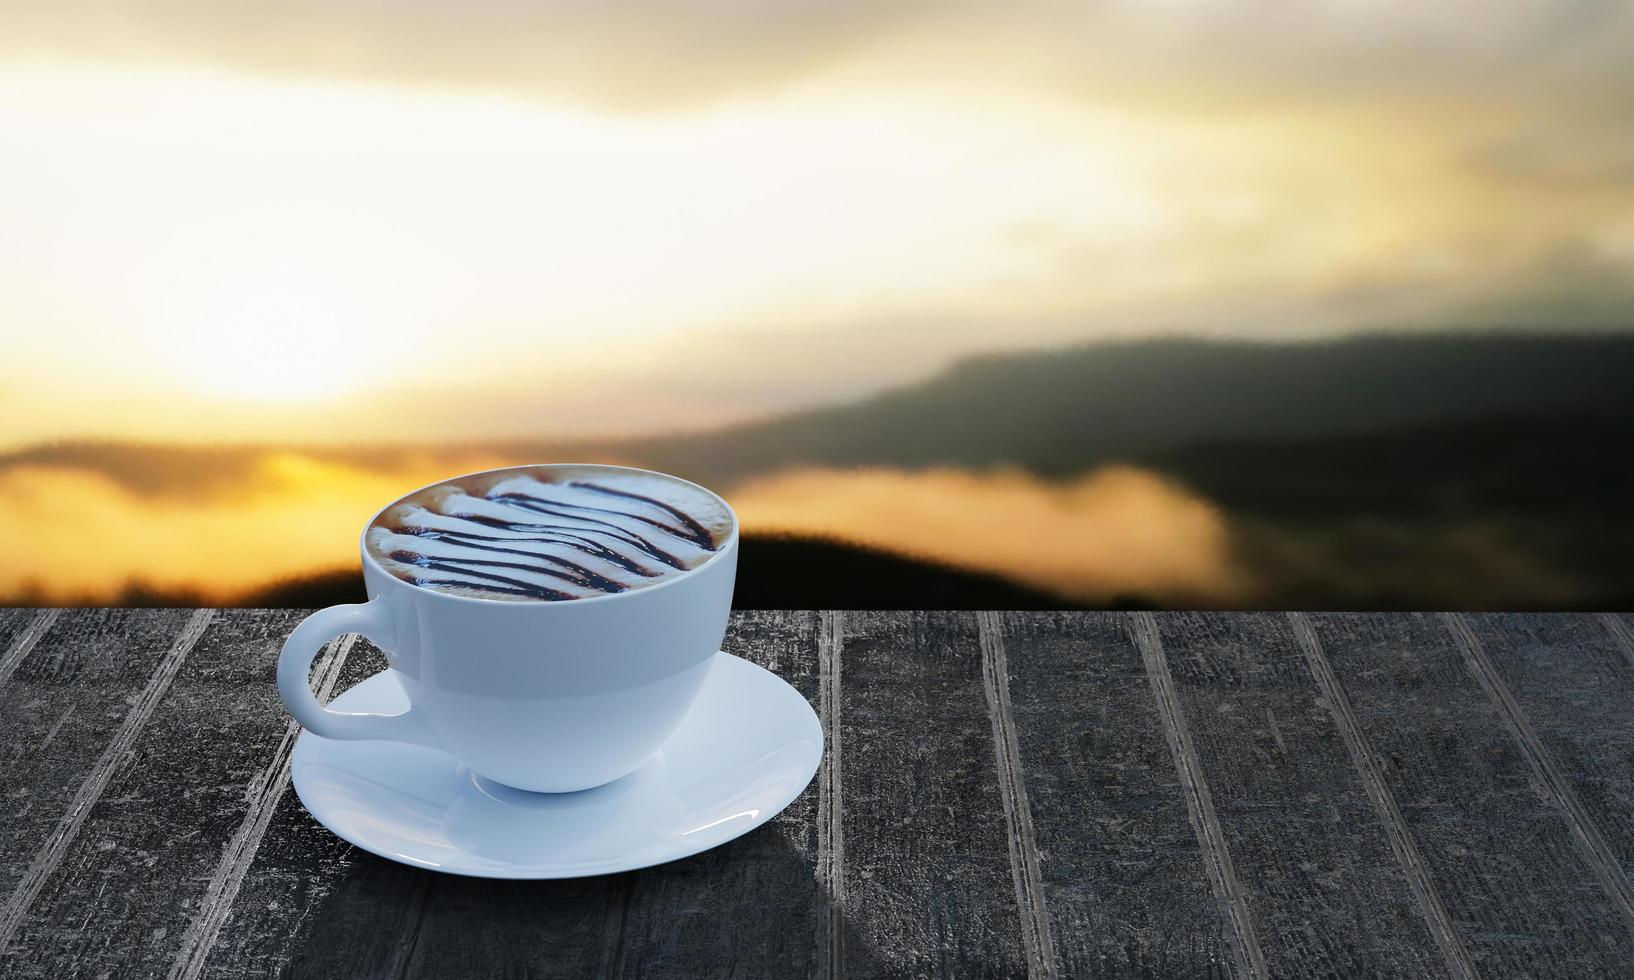 café latte art, espuma de leite coberta com calda de chocolate em uma caneca branca na mesa de ripas, o fundo é uma imagem desfocada da montanha. pela manhã e sol. renderização em 3D foto